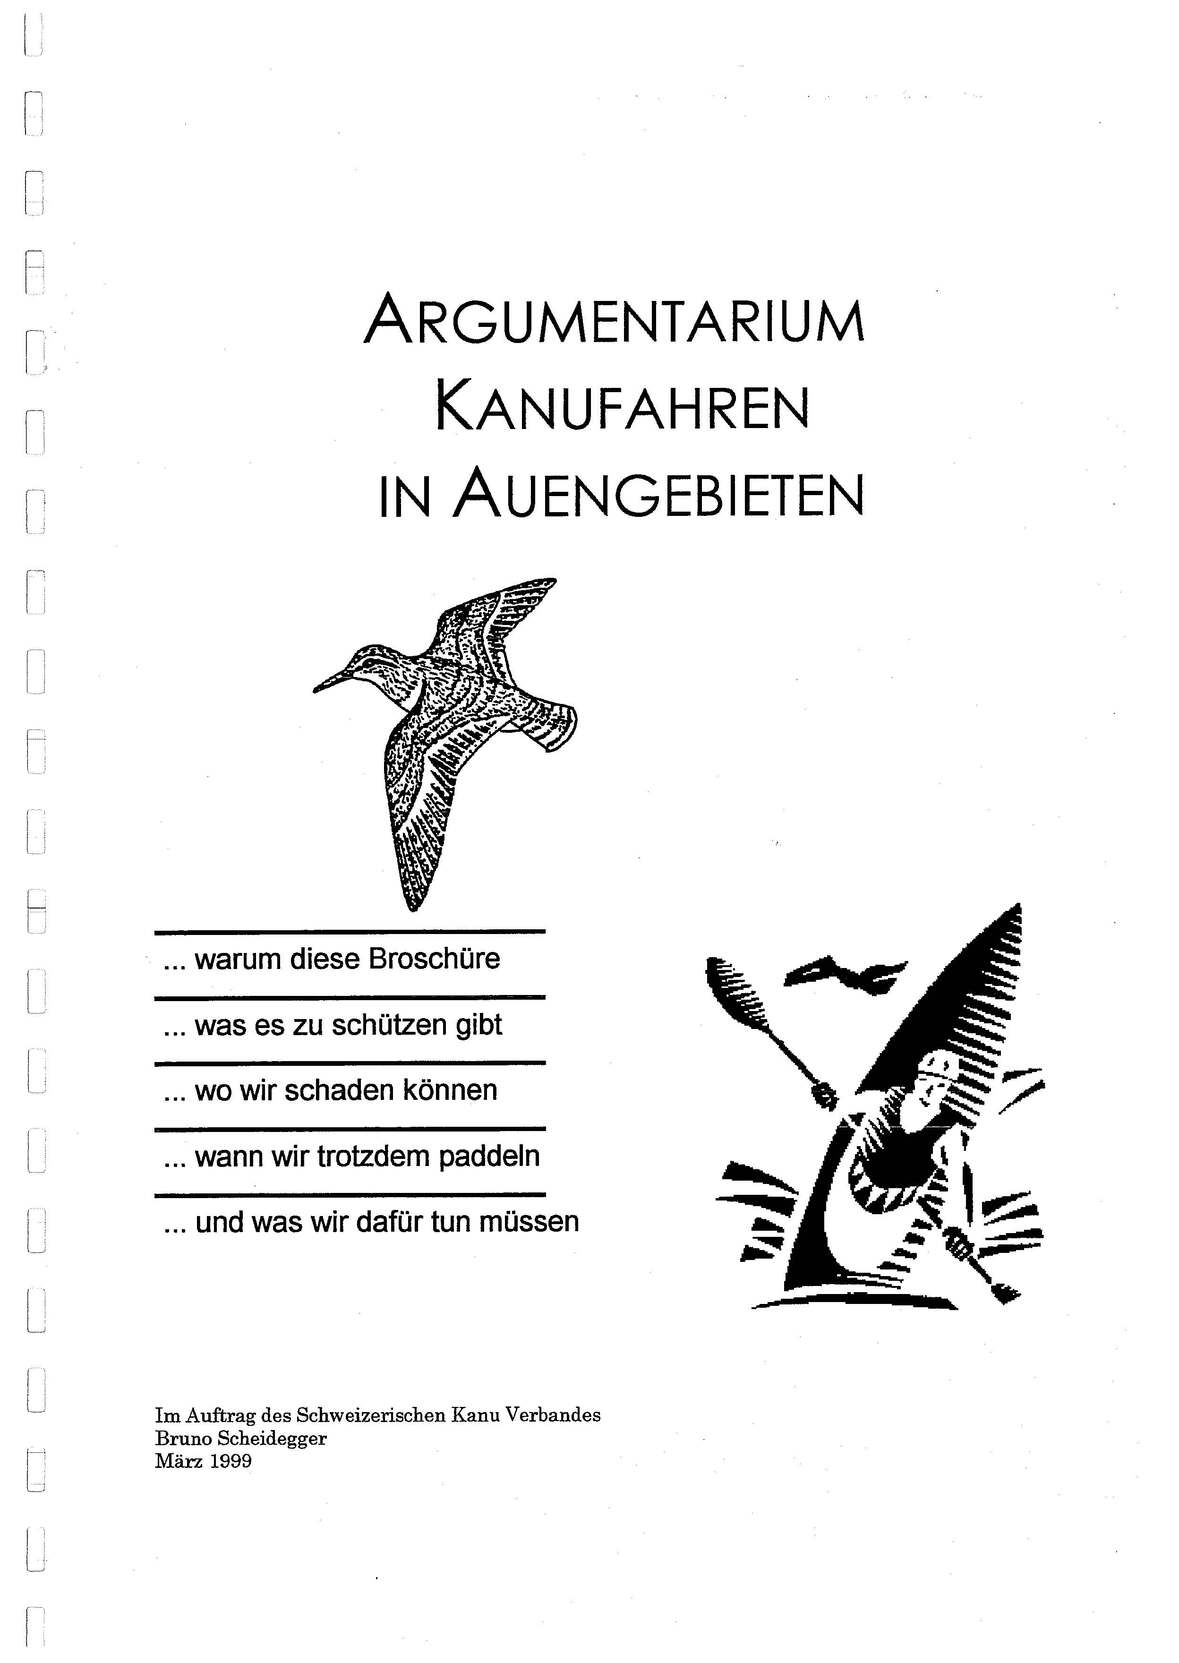 pages_from_argumentarium_kanufahren_in_auengebieten_1999.pdf.jpg